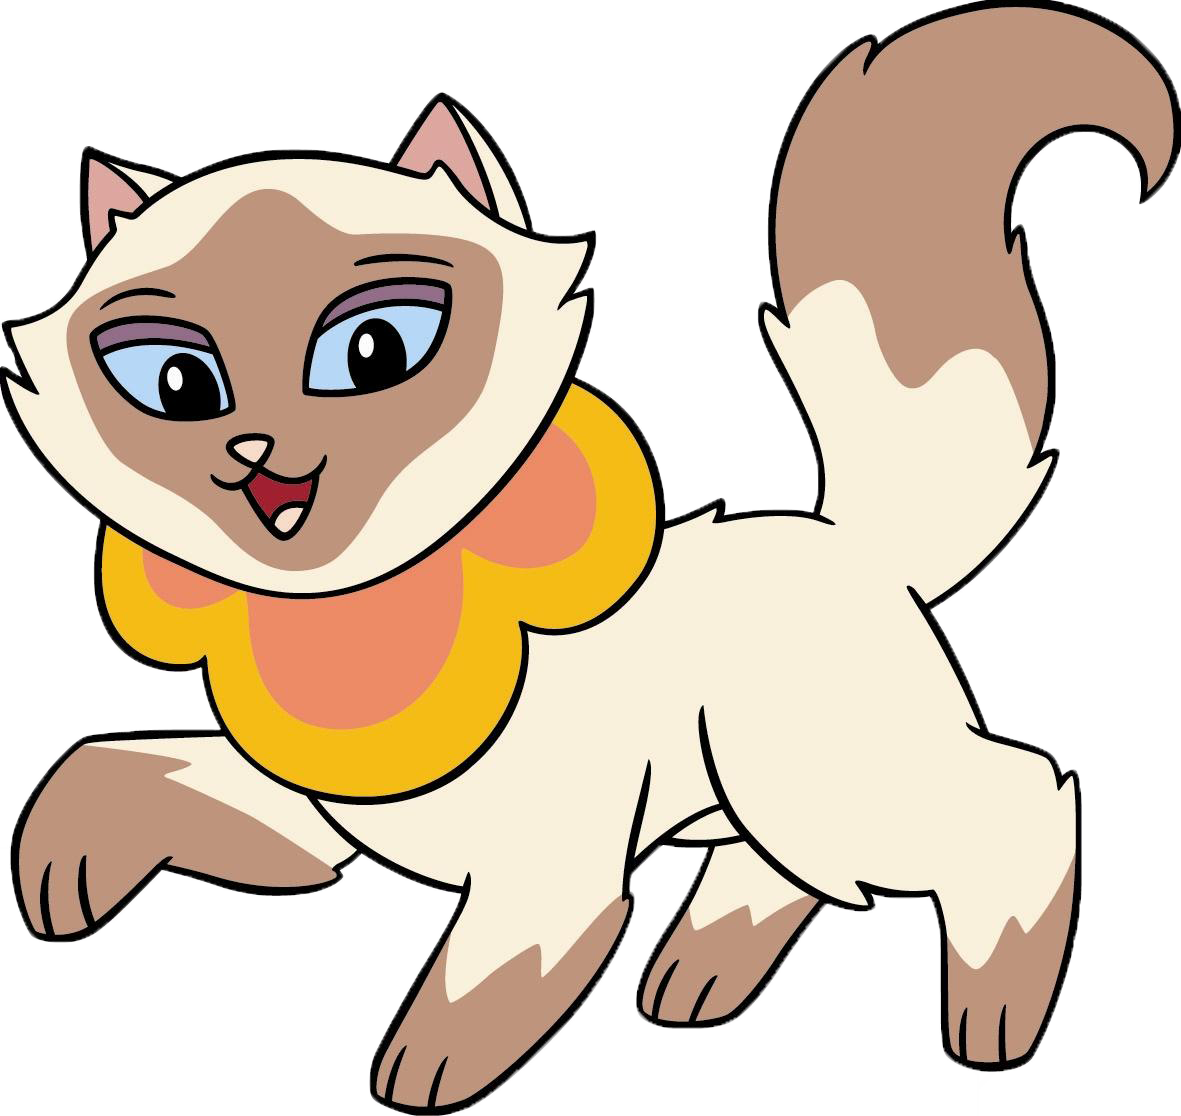 Sagwa - Sagwa The Chinese Siamese Cat Sagwa (1181x1116)